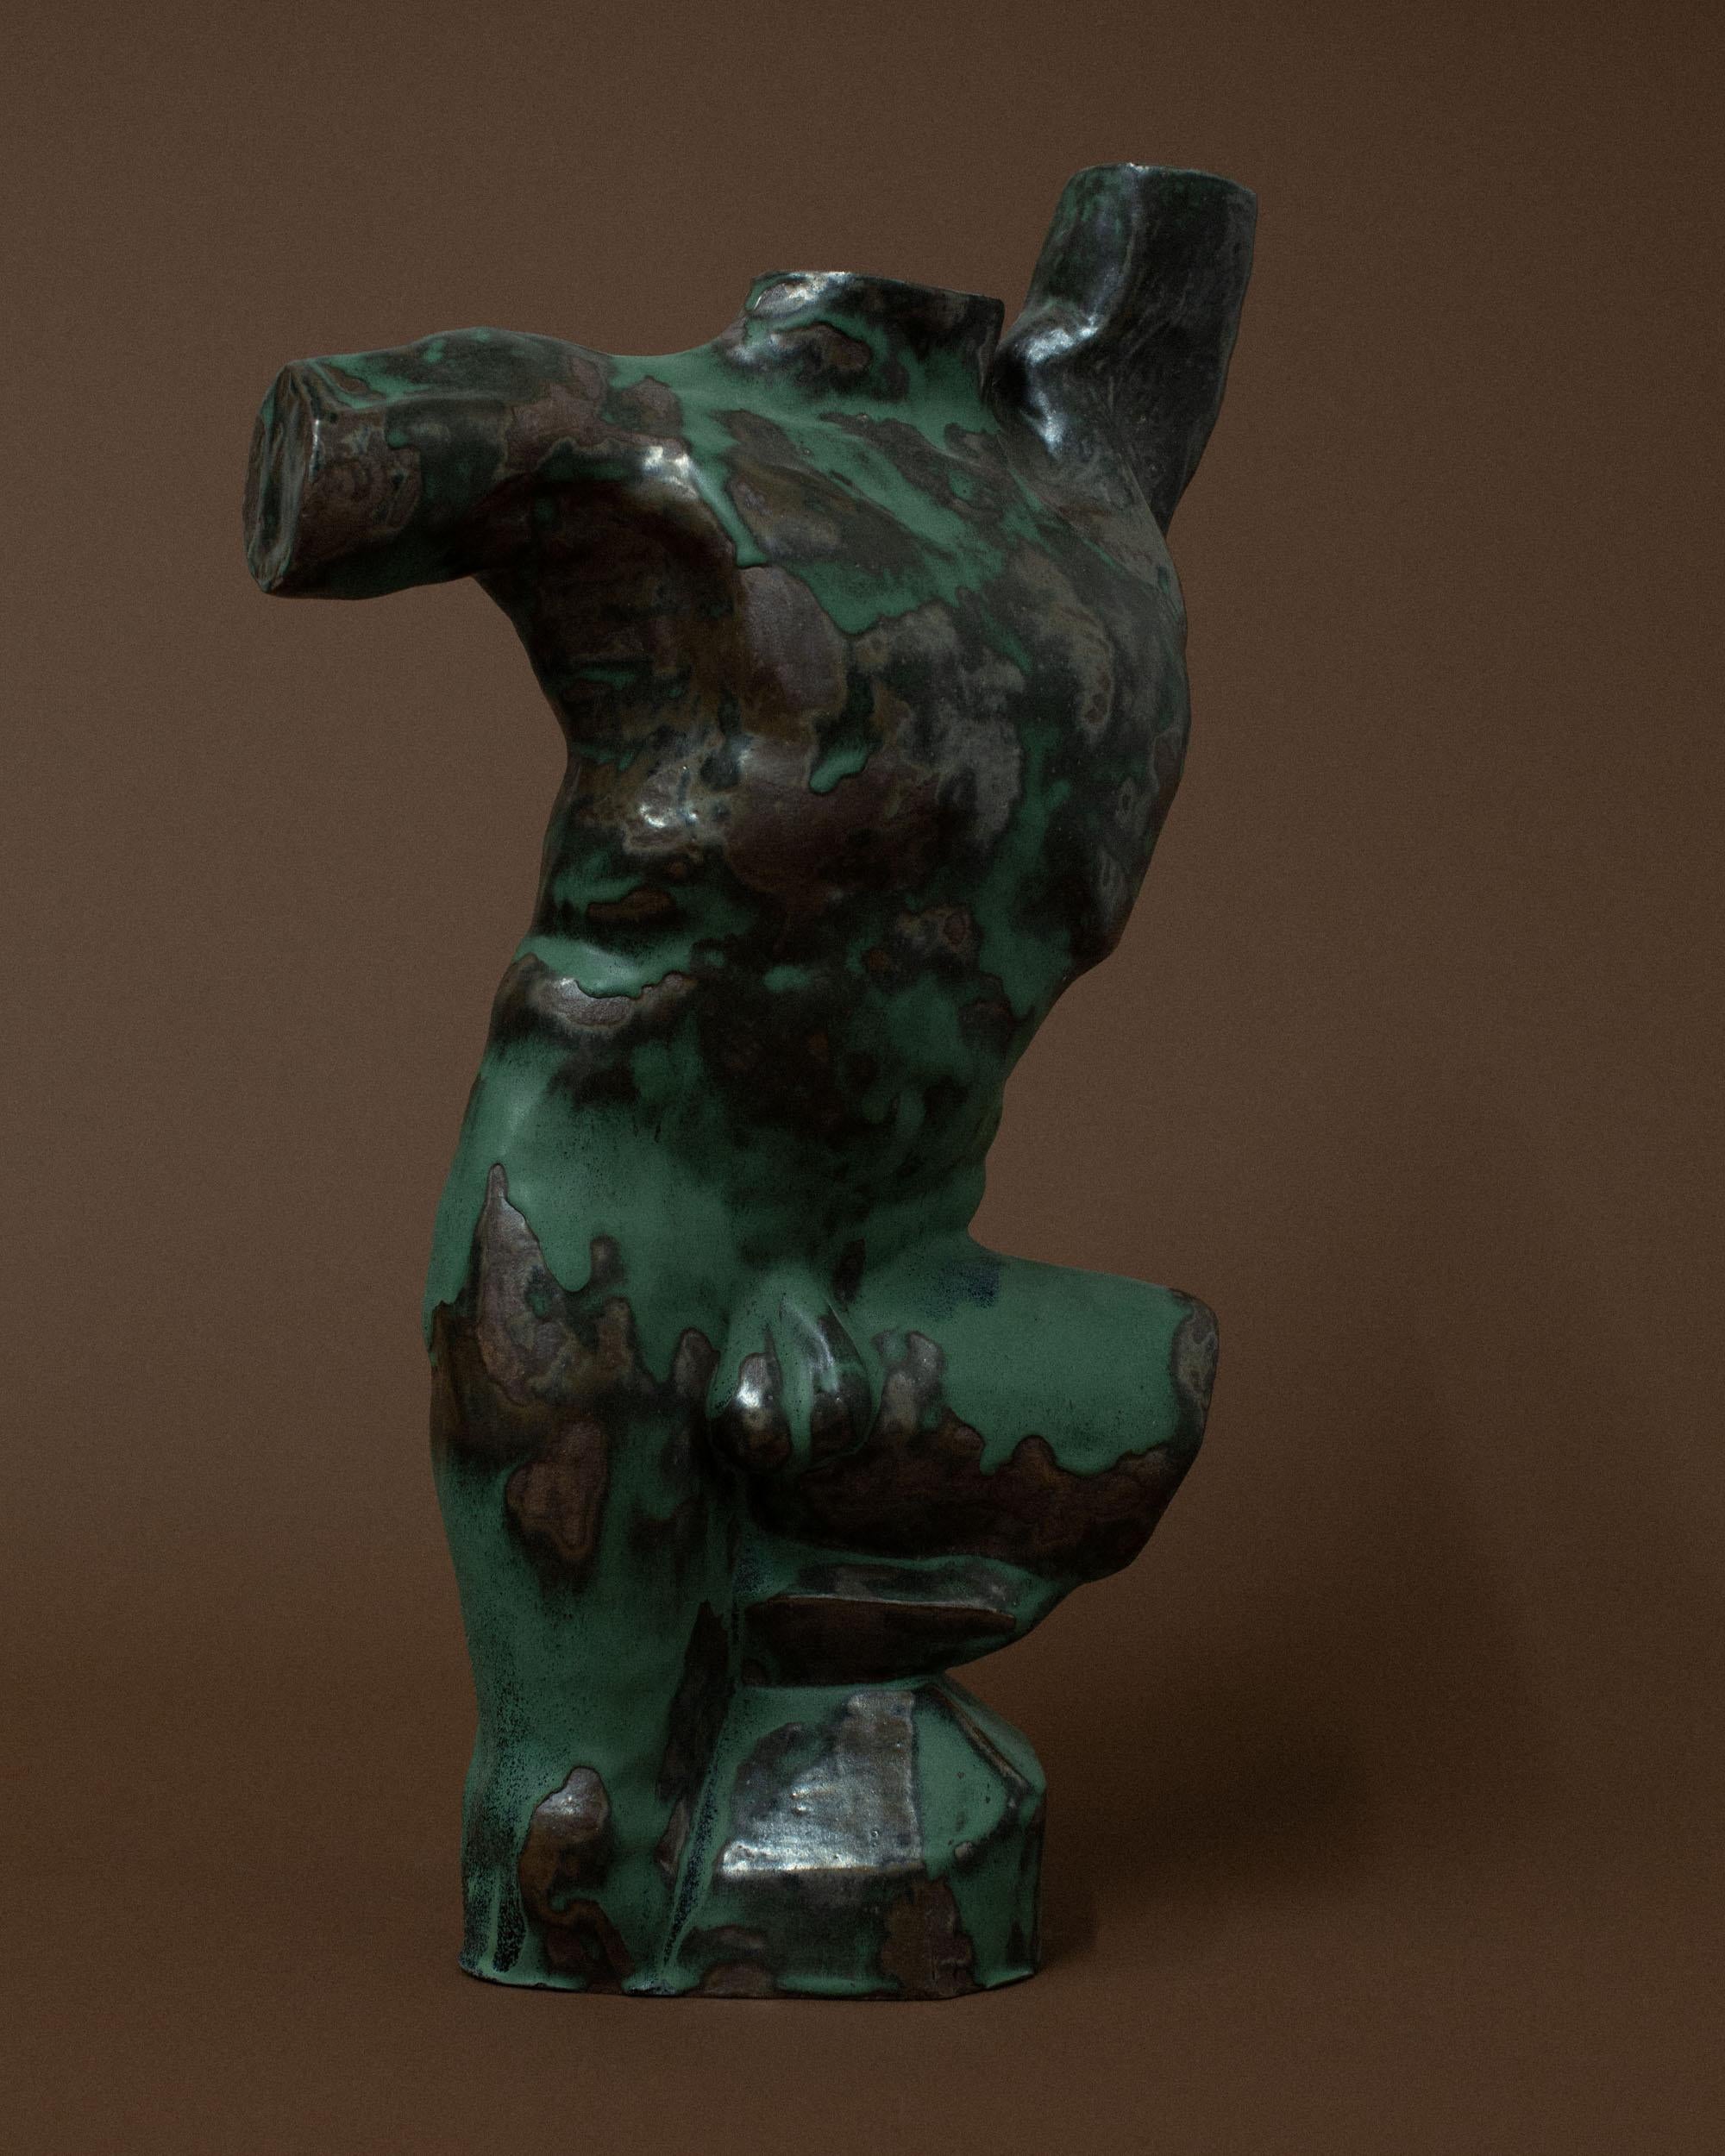 Grüne männliche Torso-Skulptur von Common Body
Abmessungen: B 46 x T 26 x H 71 cm
MATERIALIEN: Grün glasierte und rostfarbene Keramik


Common body ist ein Studio für Bildhauerei und Einrichtungsgegenstände, das von Nathaniel Kyung Smith gegründet